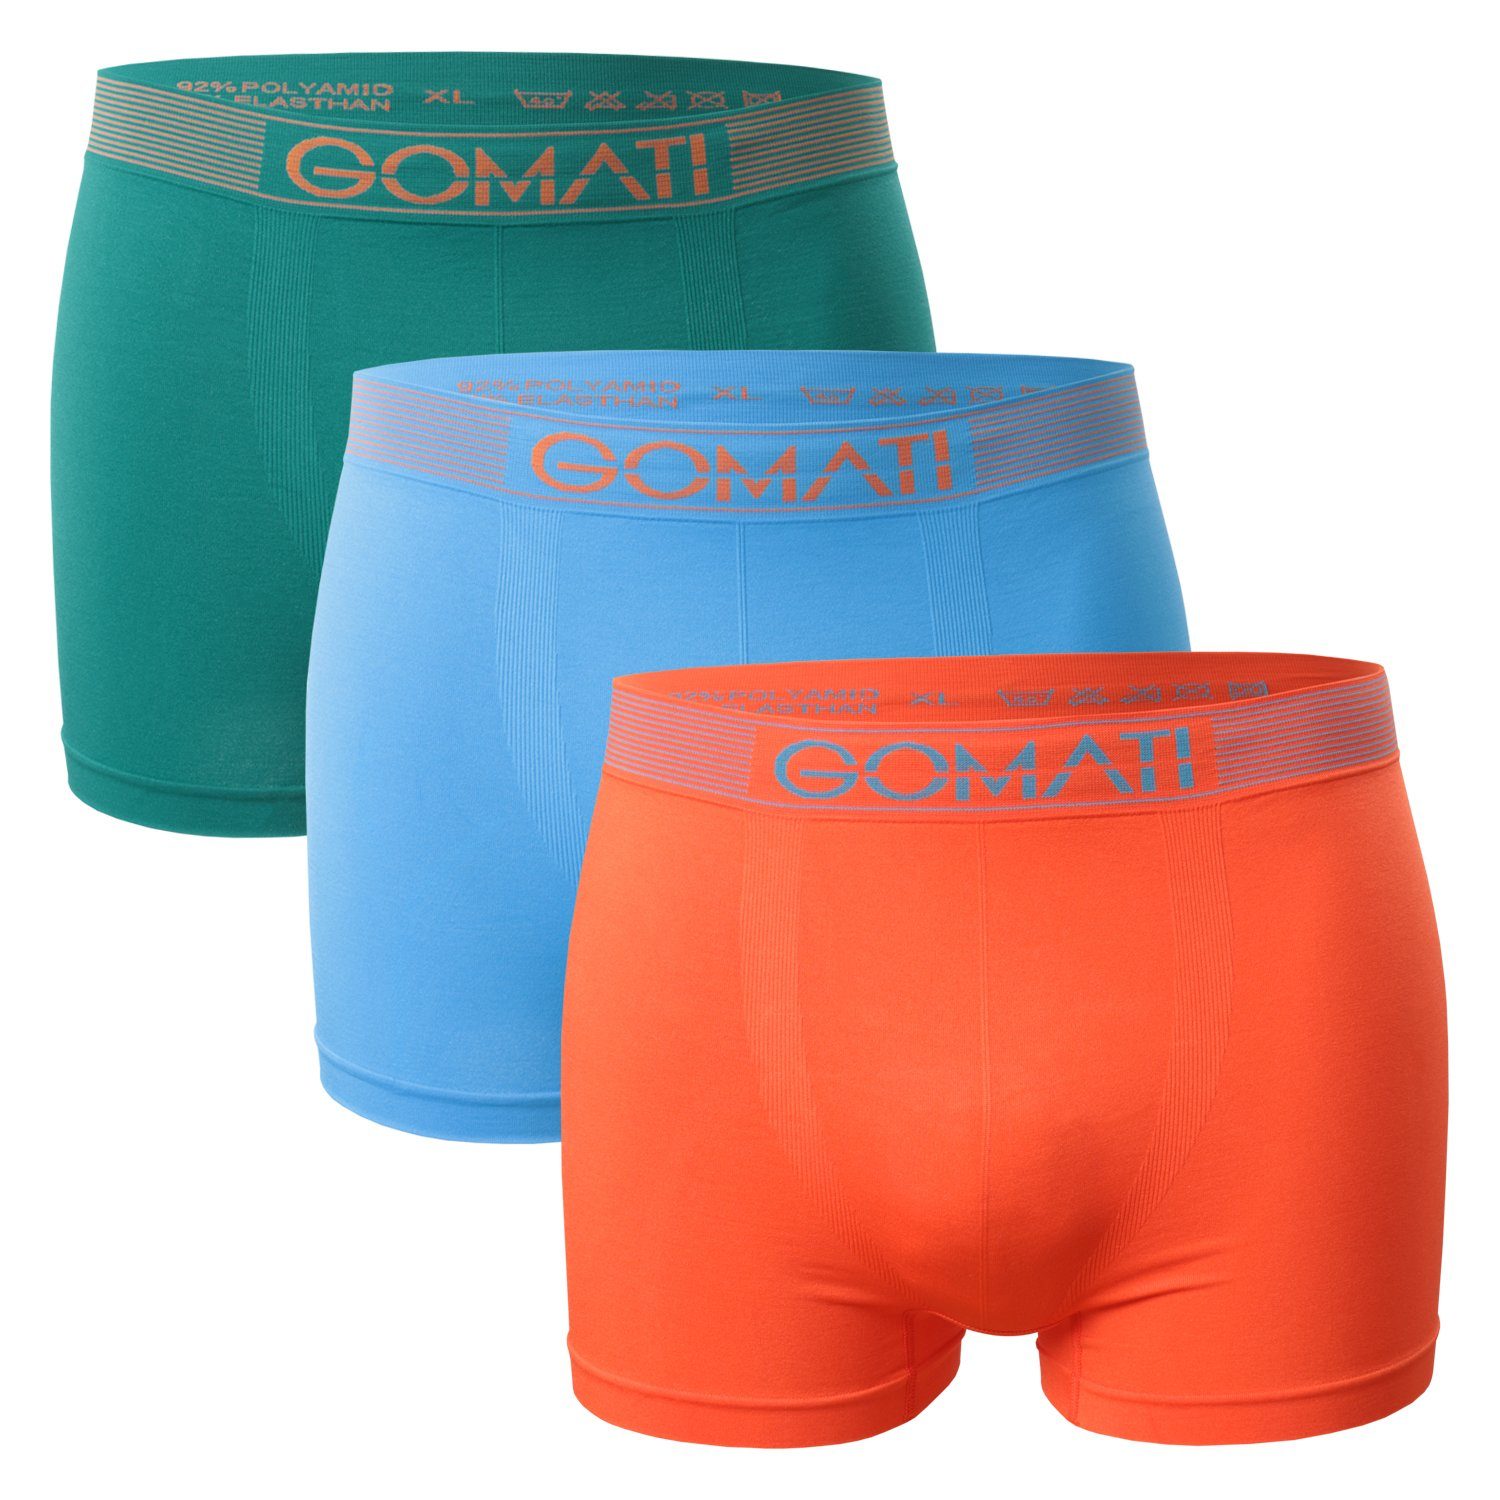 Gomati Boxershorts Herren Seamless Pants (3er Pack) Microfaser-Elasthan Boxershorts